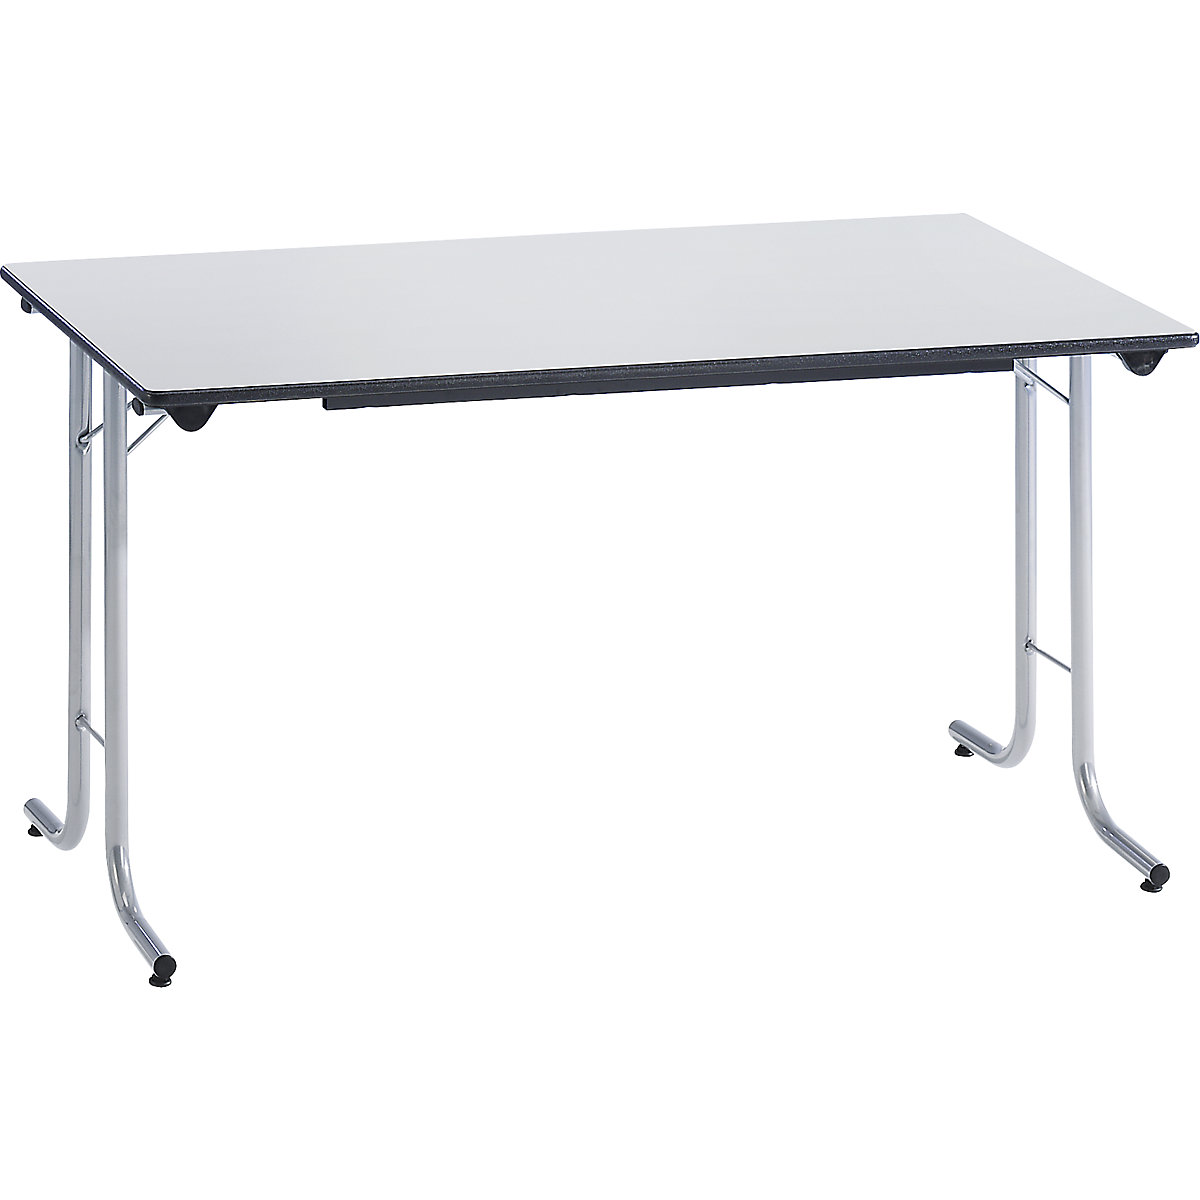 Inklapbare tafel, met afgeronde randen, tafelpoten van staalbuis, bladvorm rechthoekig, 1200 x 700 mm, frame aluminiumkleurig, blad lichtgrijs-1